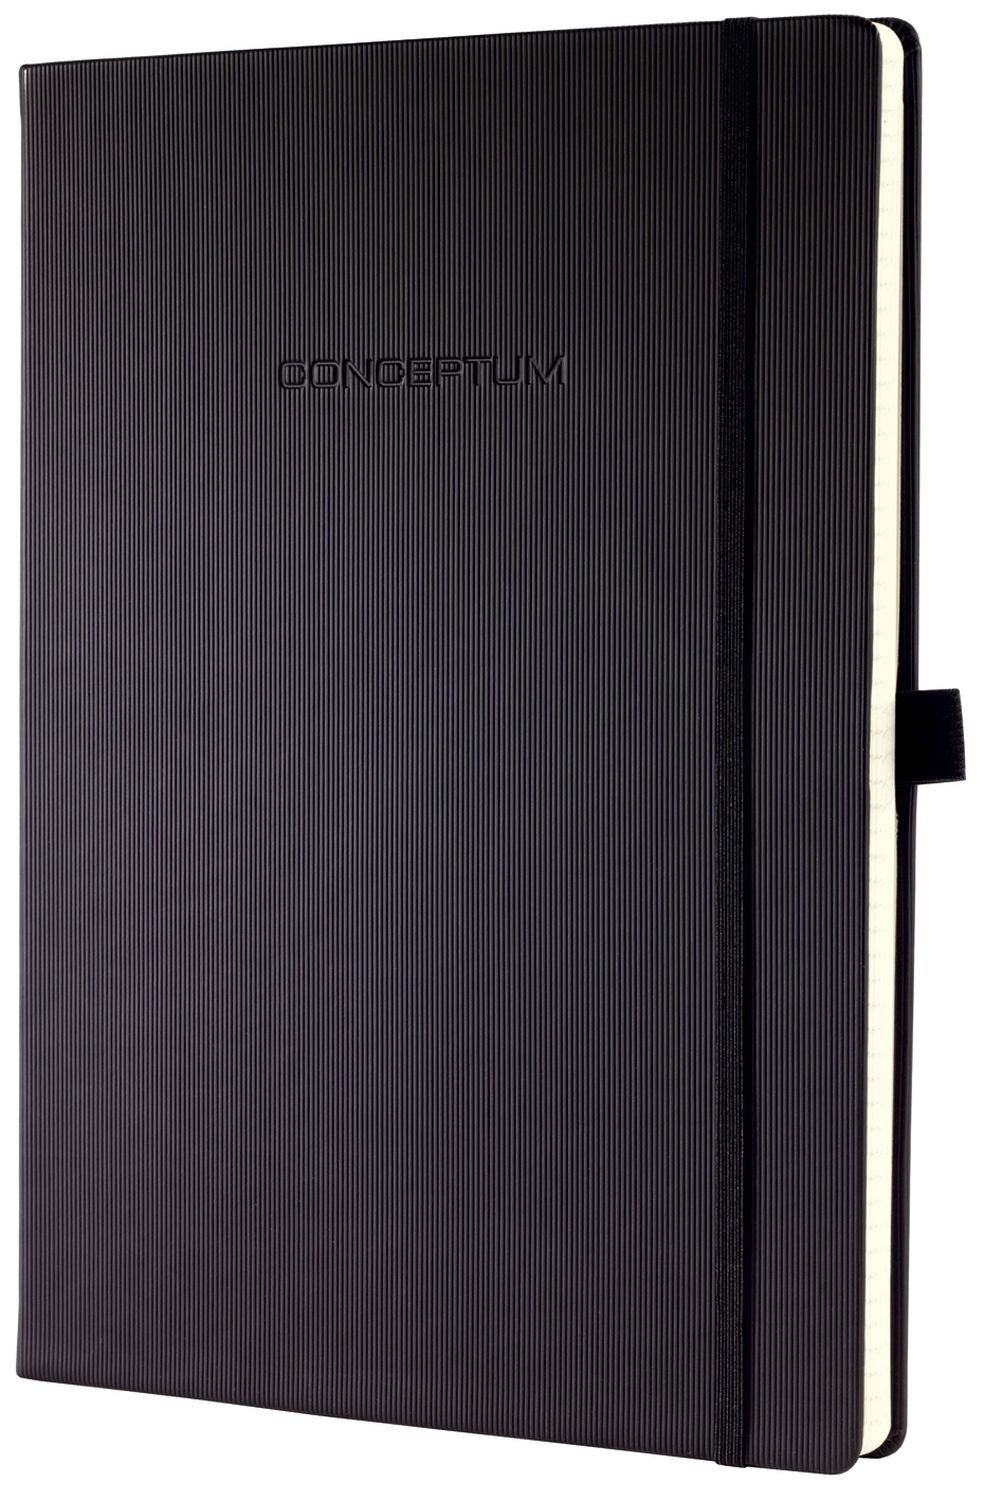 Notizbuch Conceptum - ca. A4, punktkariert, 194 Seiten, schwarz, Hardcover